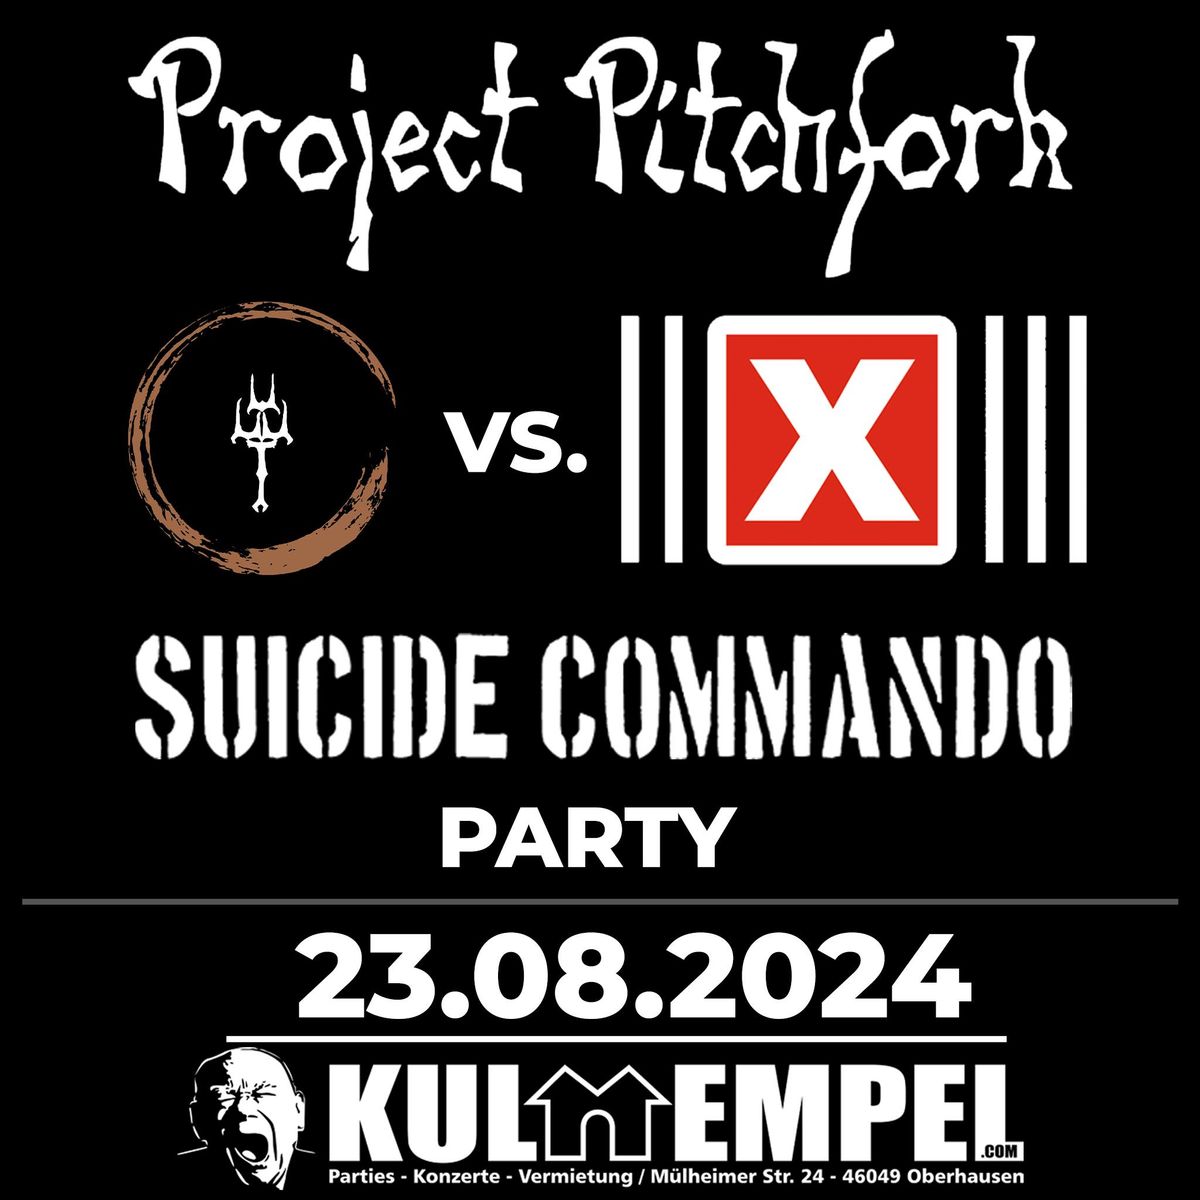 Pitchfork vs. Suicide Commando Party